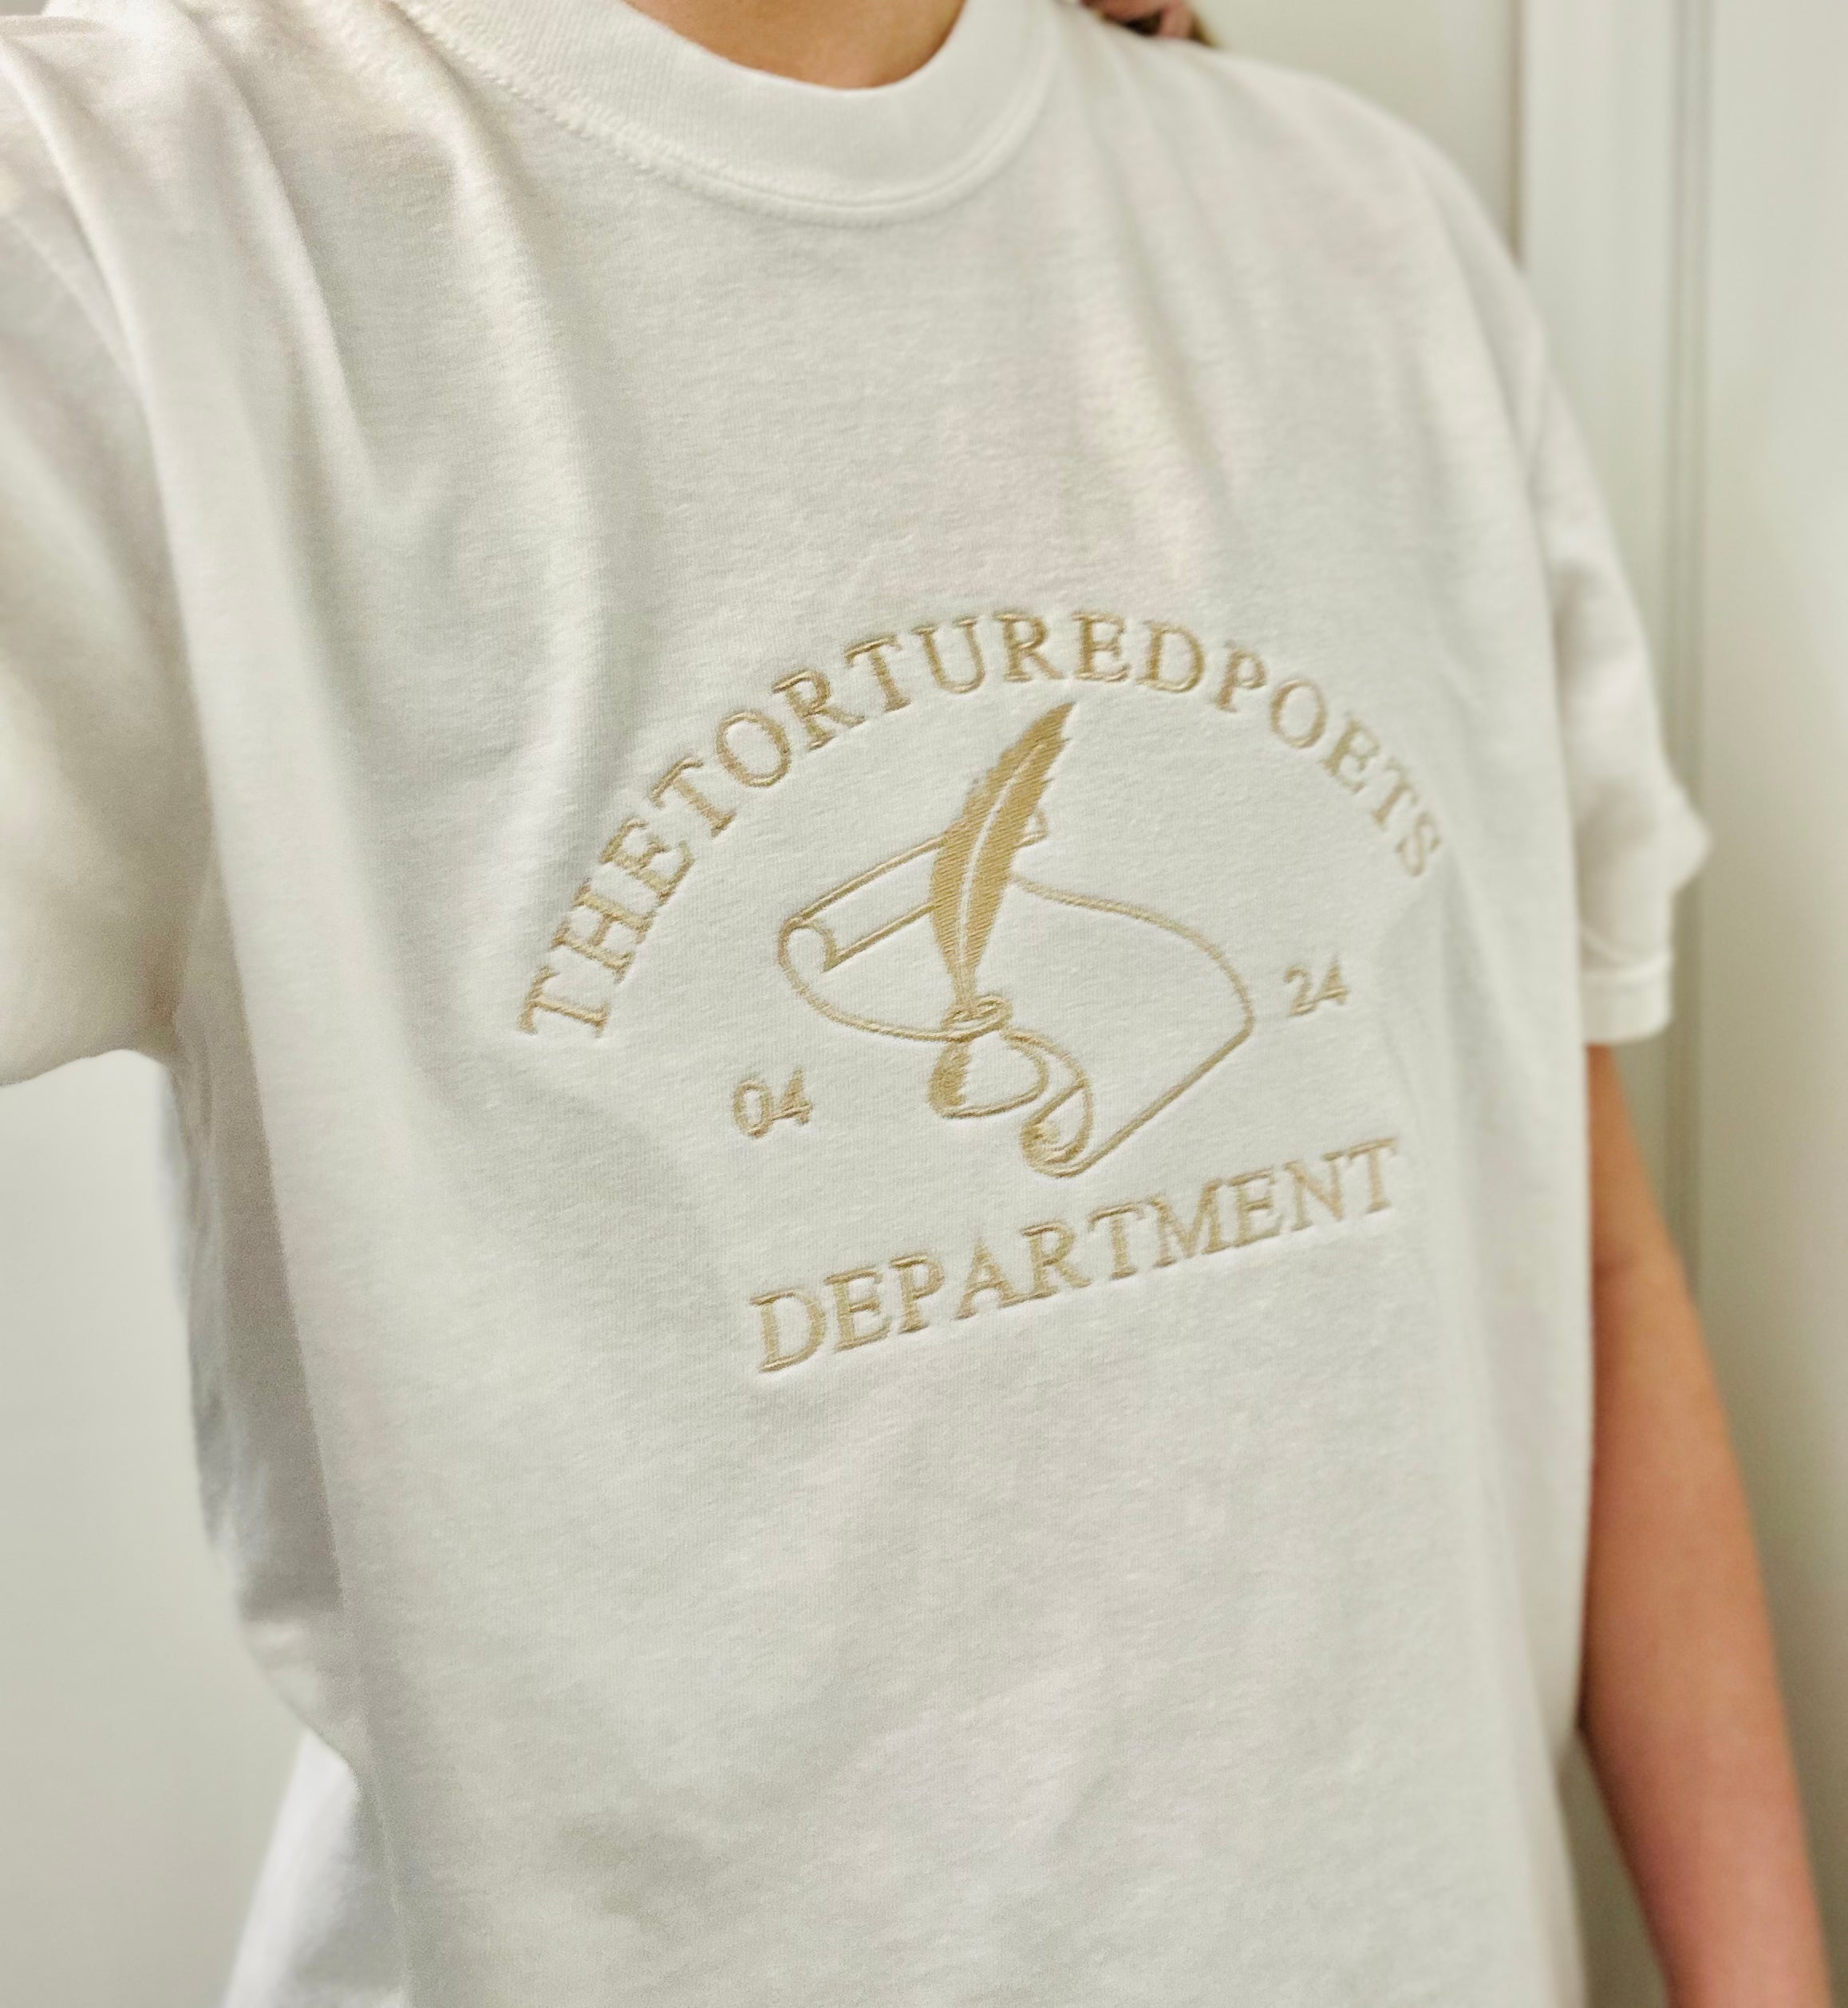 The Tortured Poets Department Member Sweatshirt